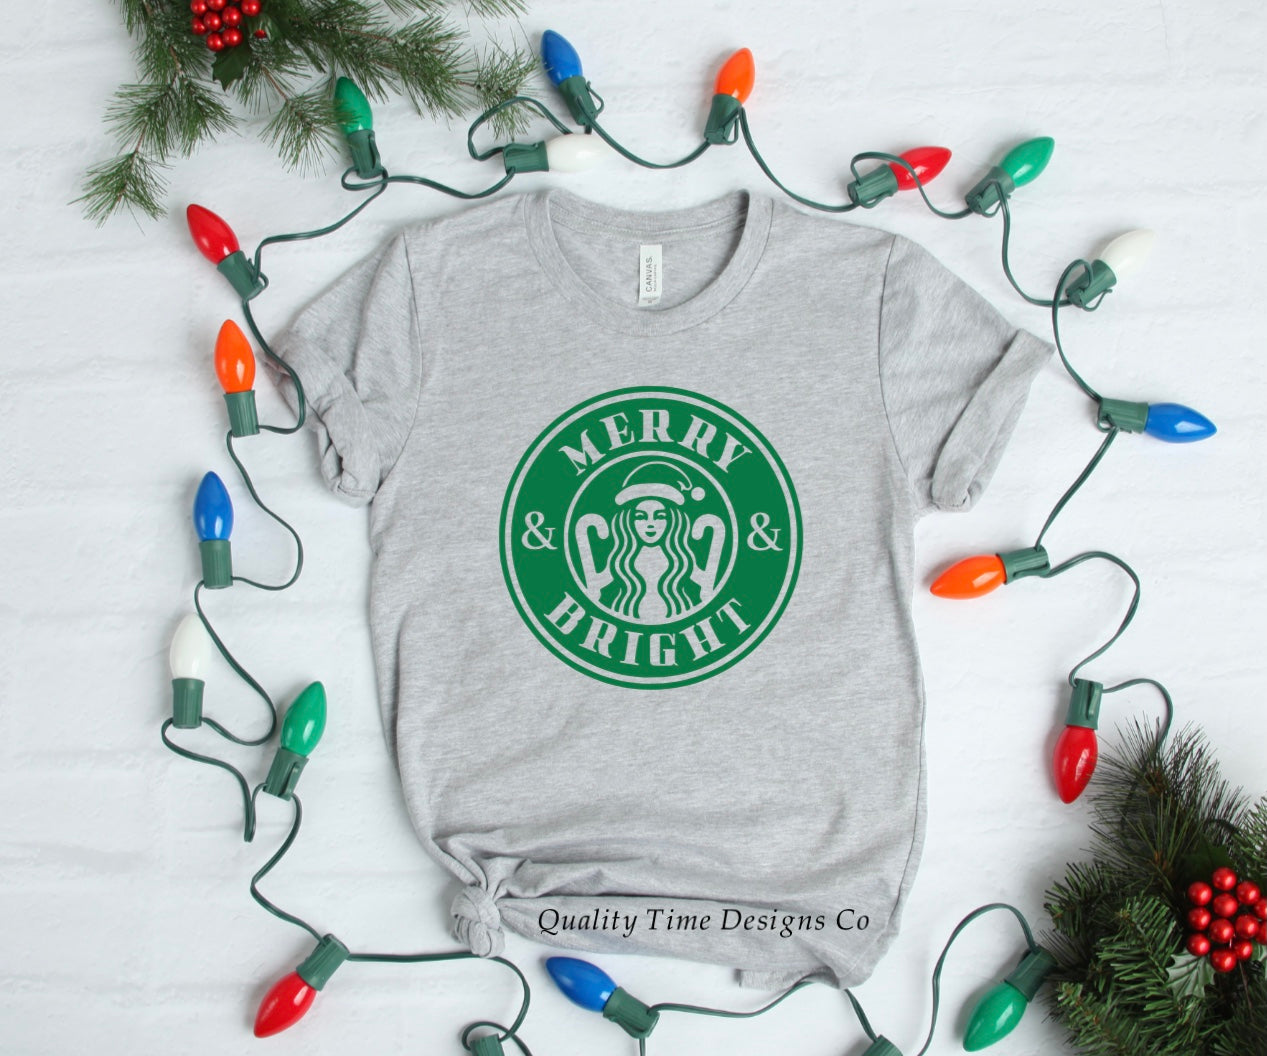 Merry and bright Starbucks t-shirt 